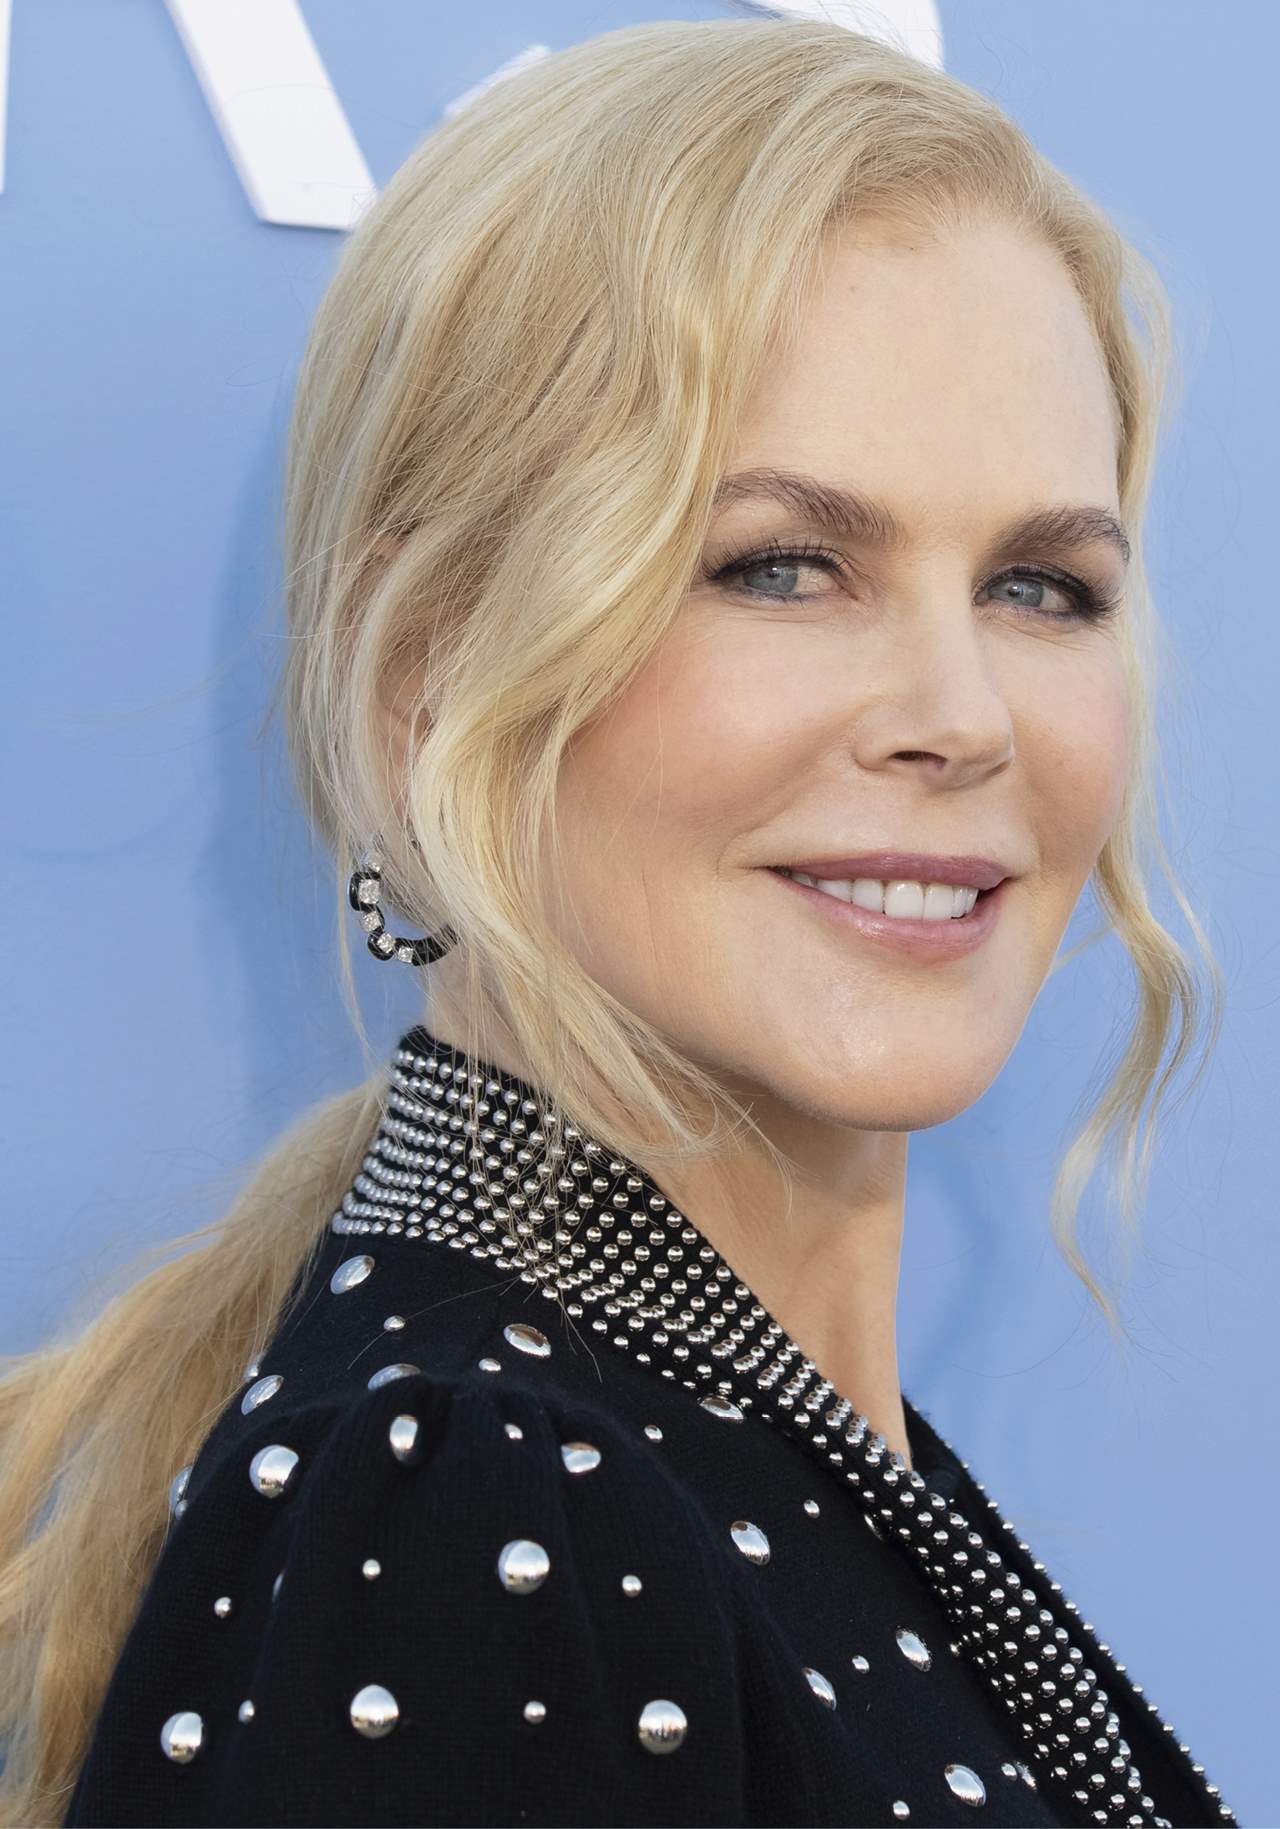 Nicole Kidman maquillaje párpados caídos